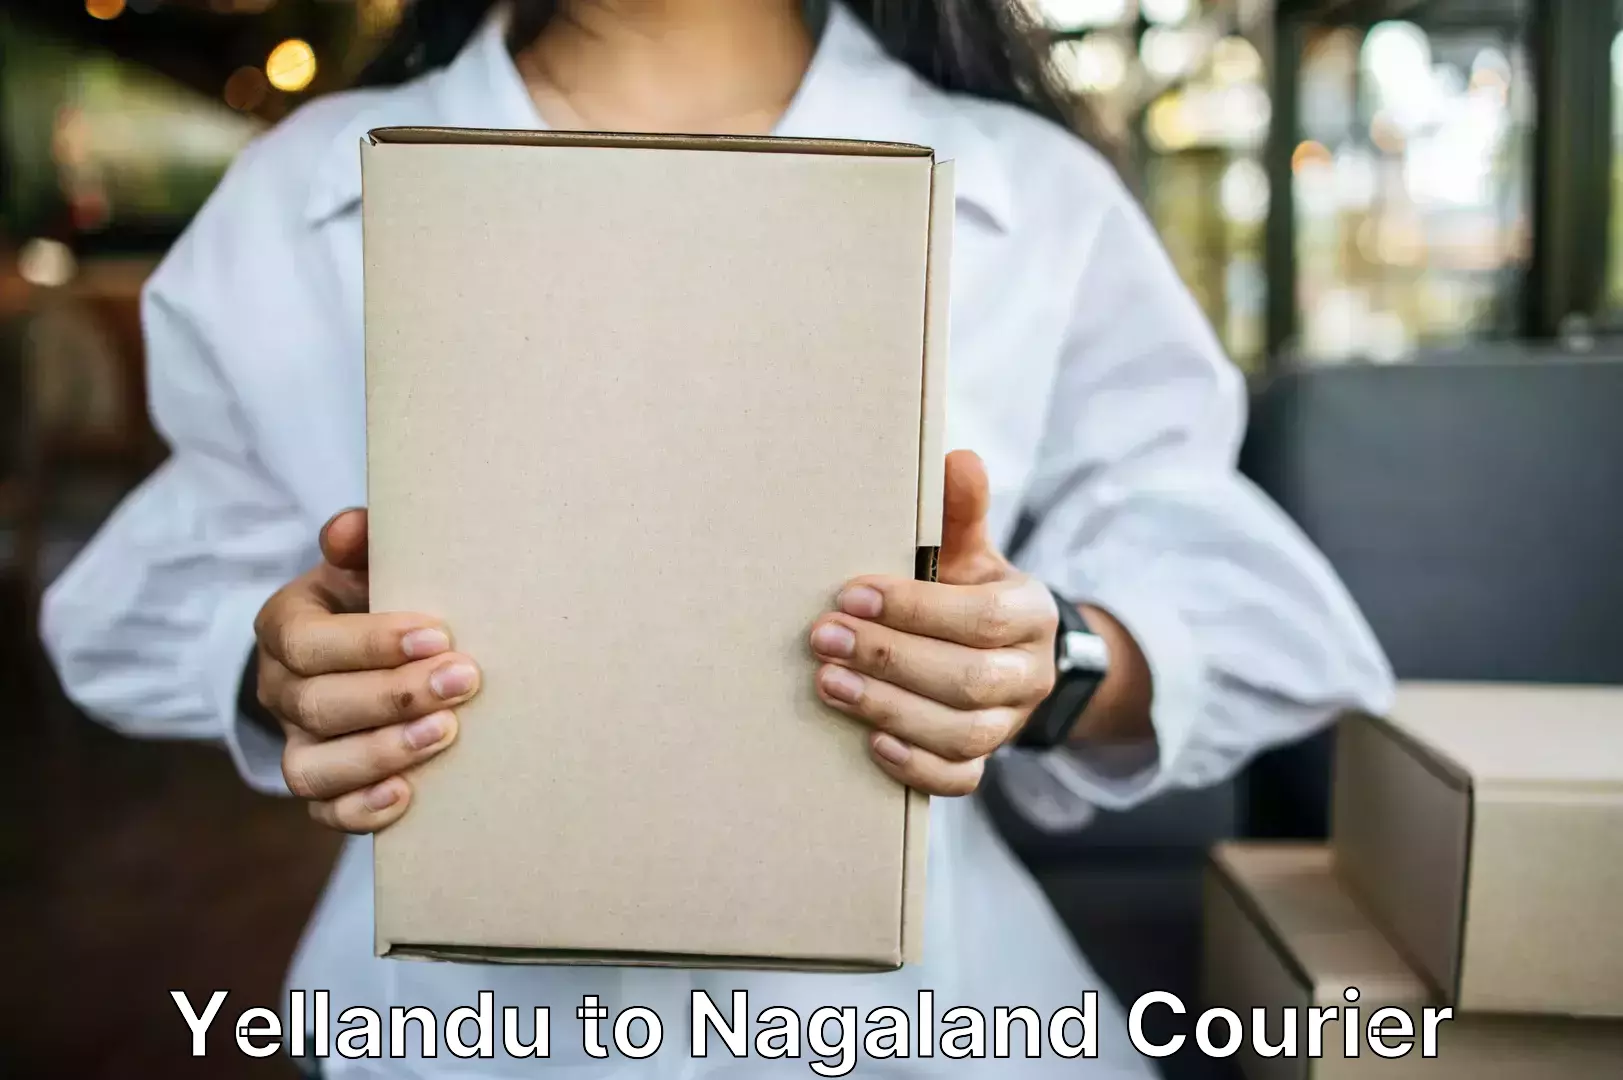 Luggage shipment tracking Yellandu to Nagaland